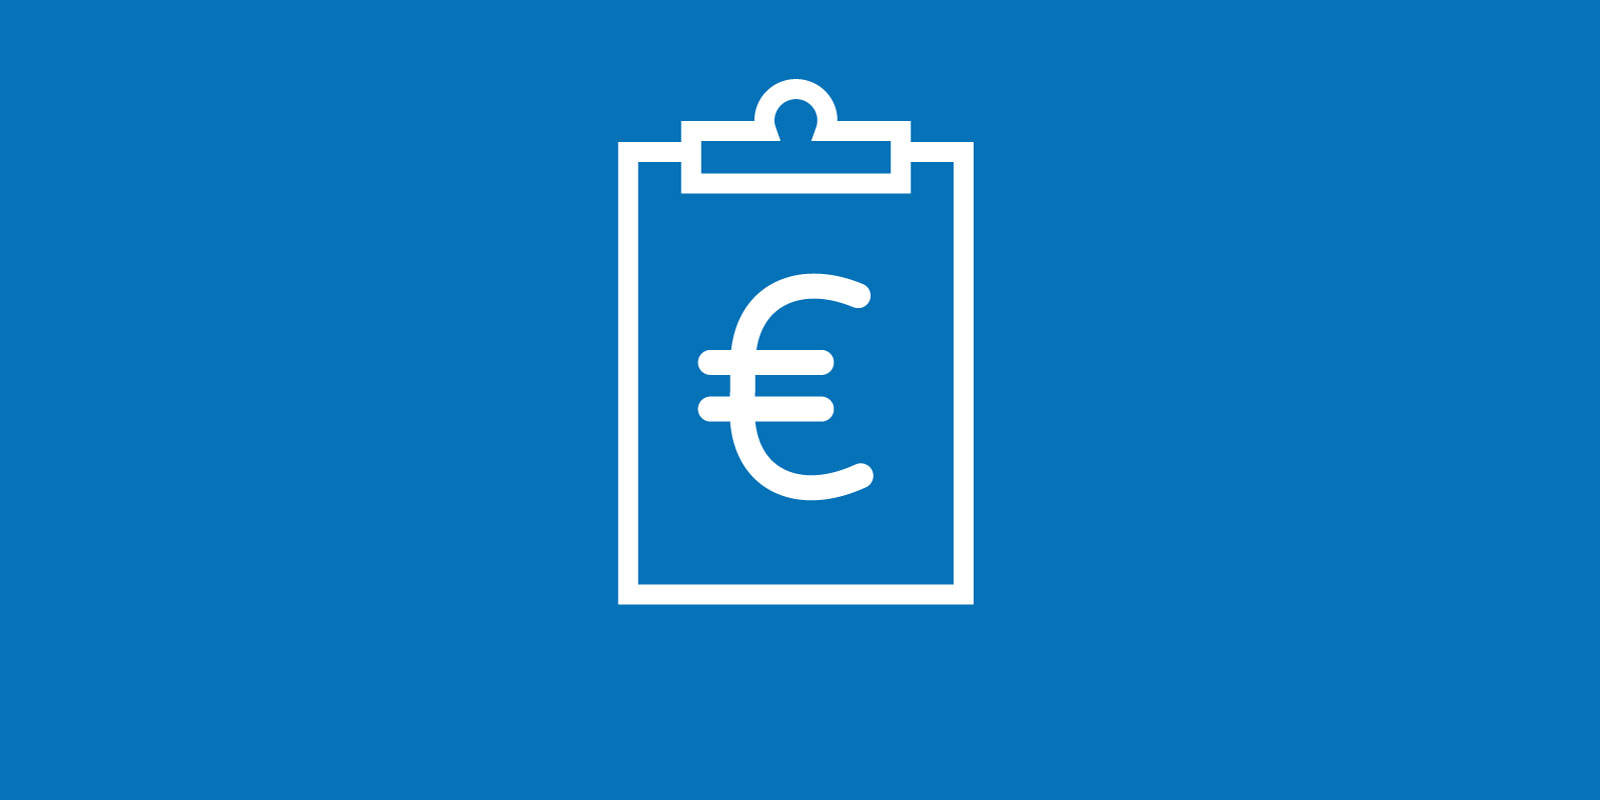 Illustration eines Klemmbretts mit Euro-Zeichen